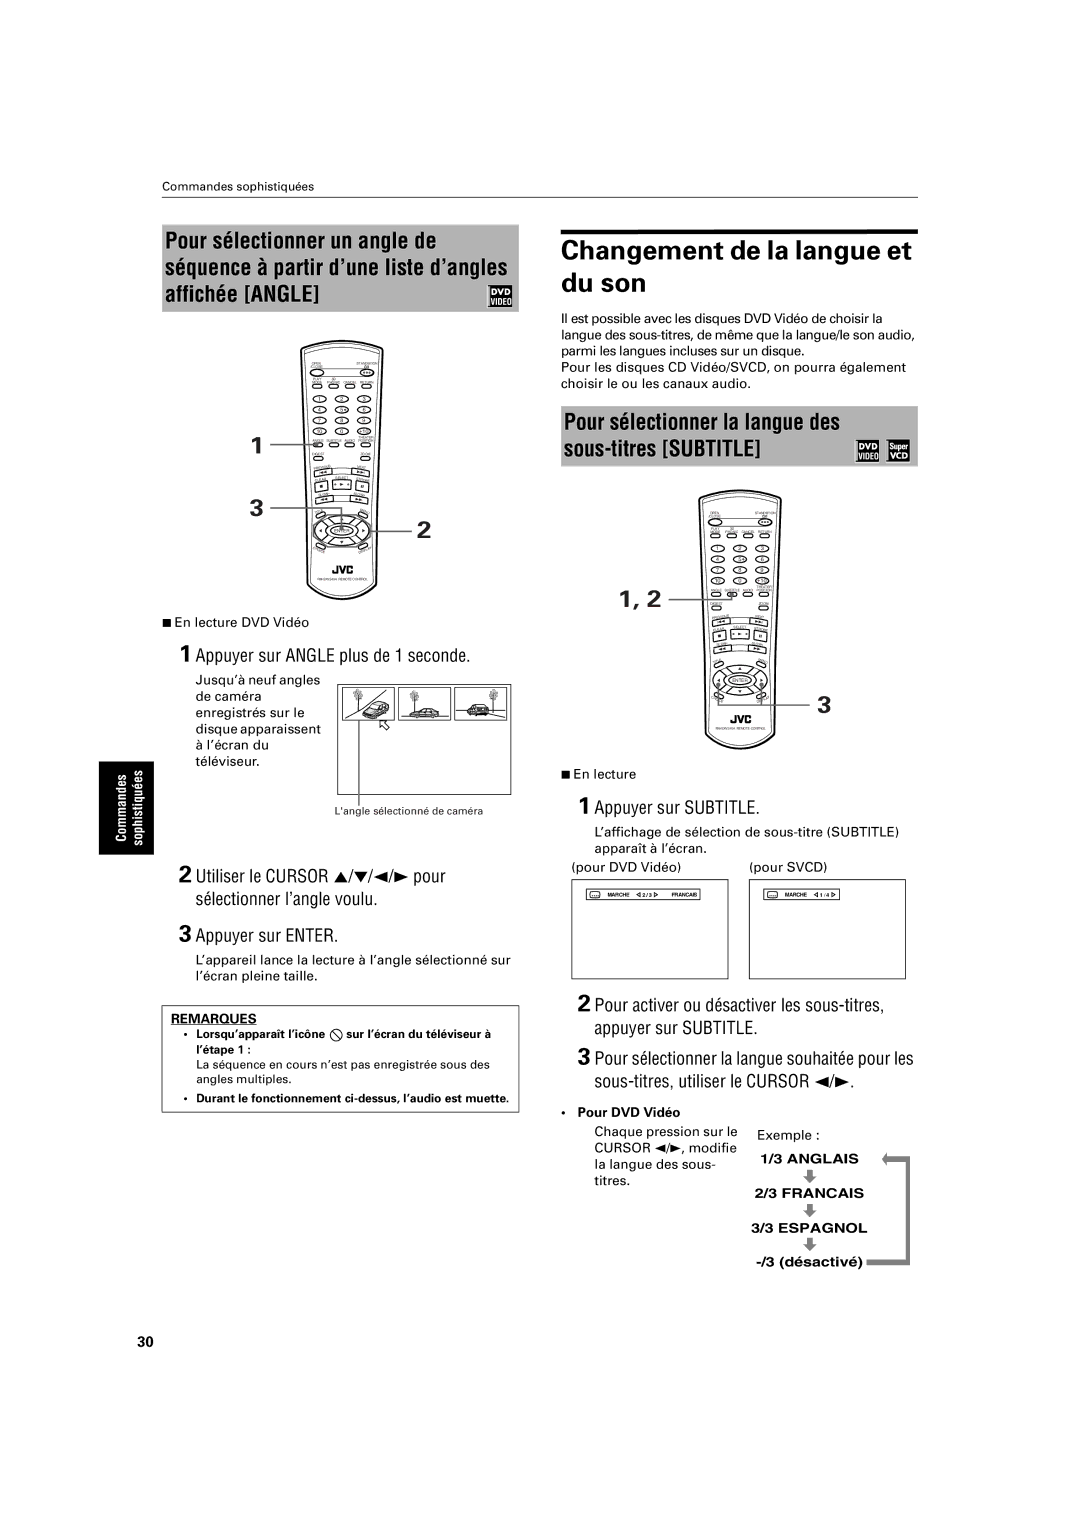 JVC XV-S200 manual Changement de la langue et du son, Pour sélectionner un angle de, Appuyer sur Angle plus de 1 seconde 